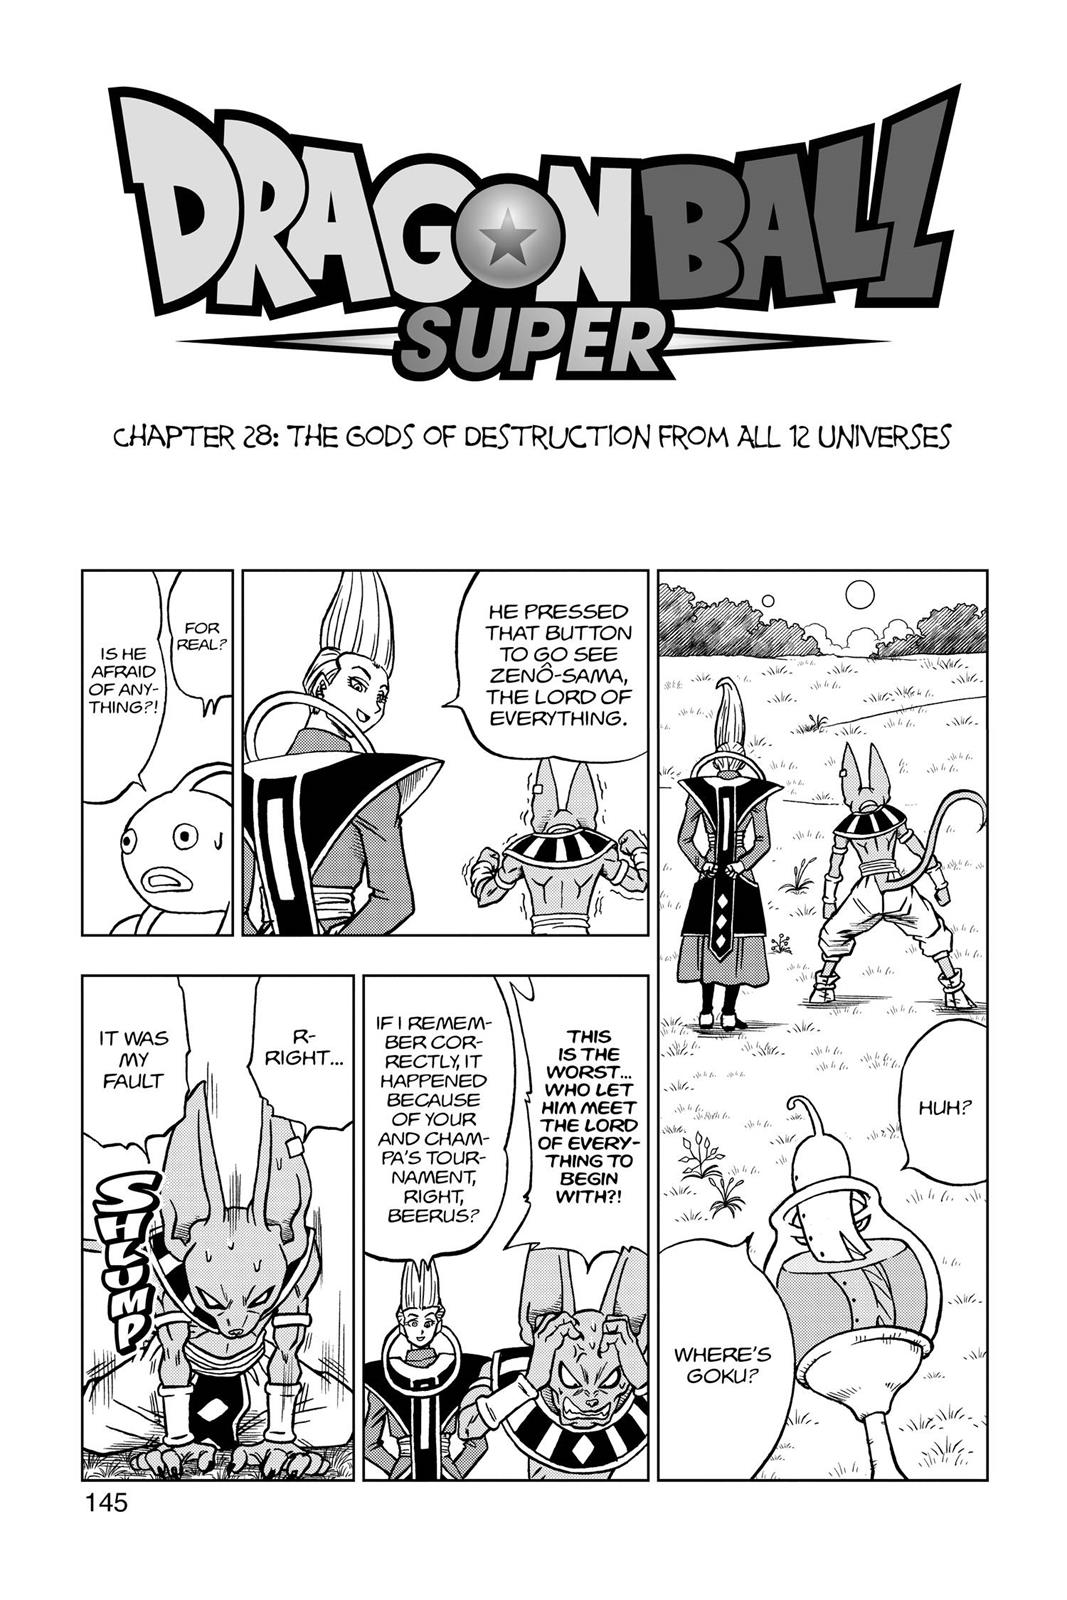 Dragon Ball Super Vol. 12